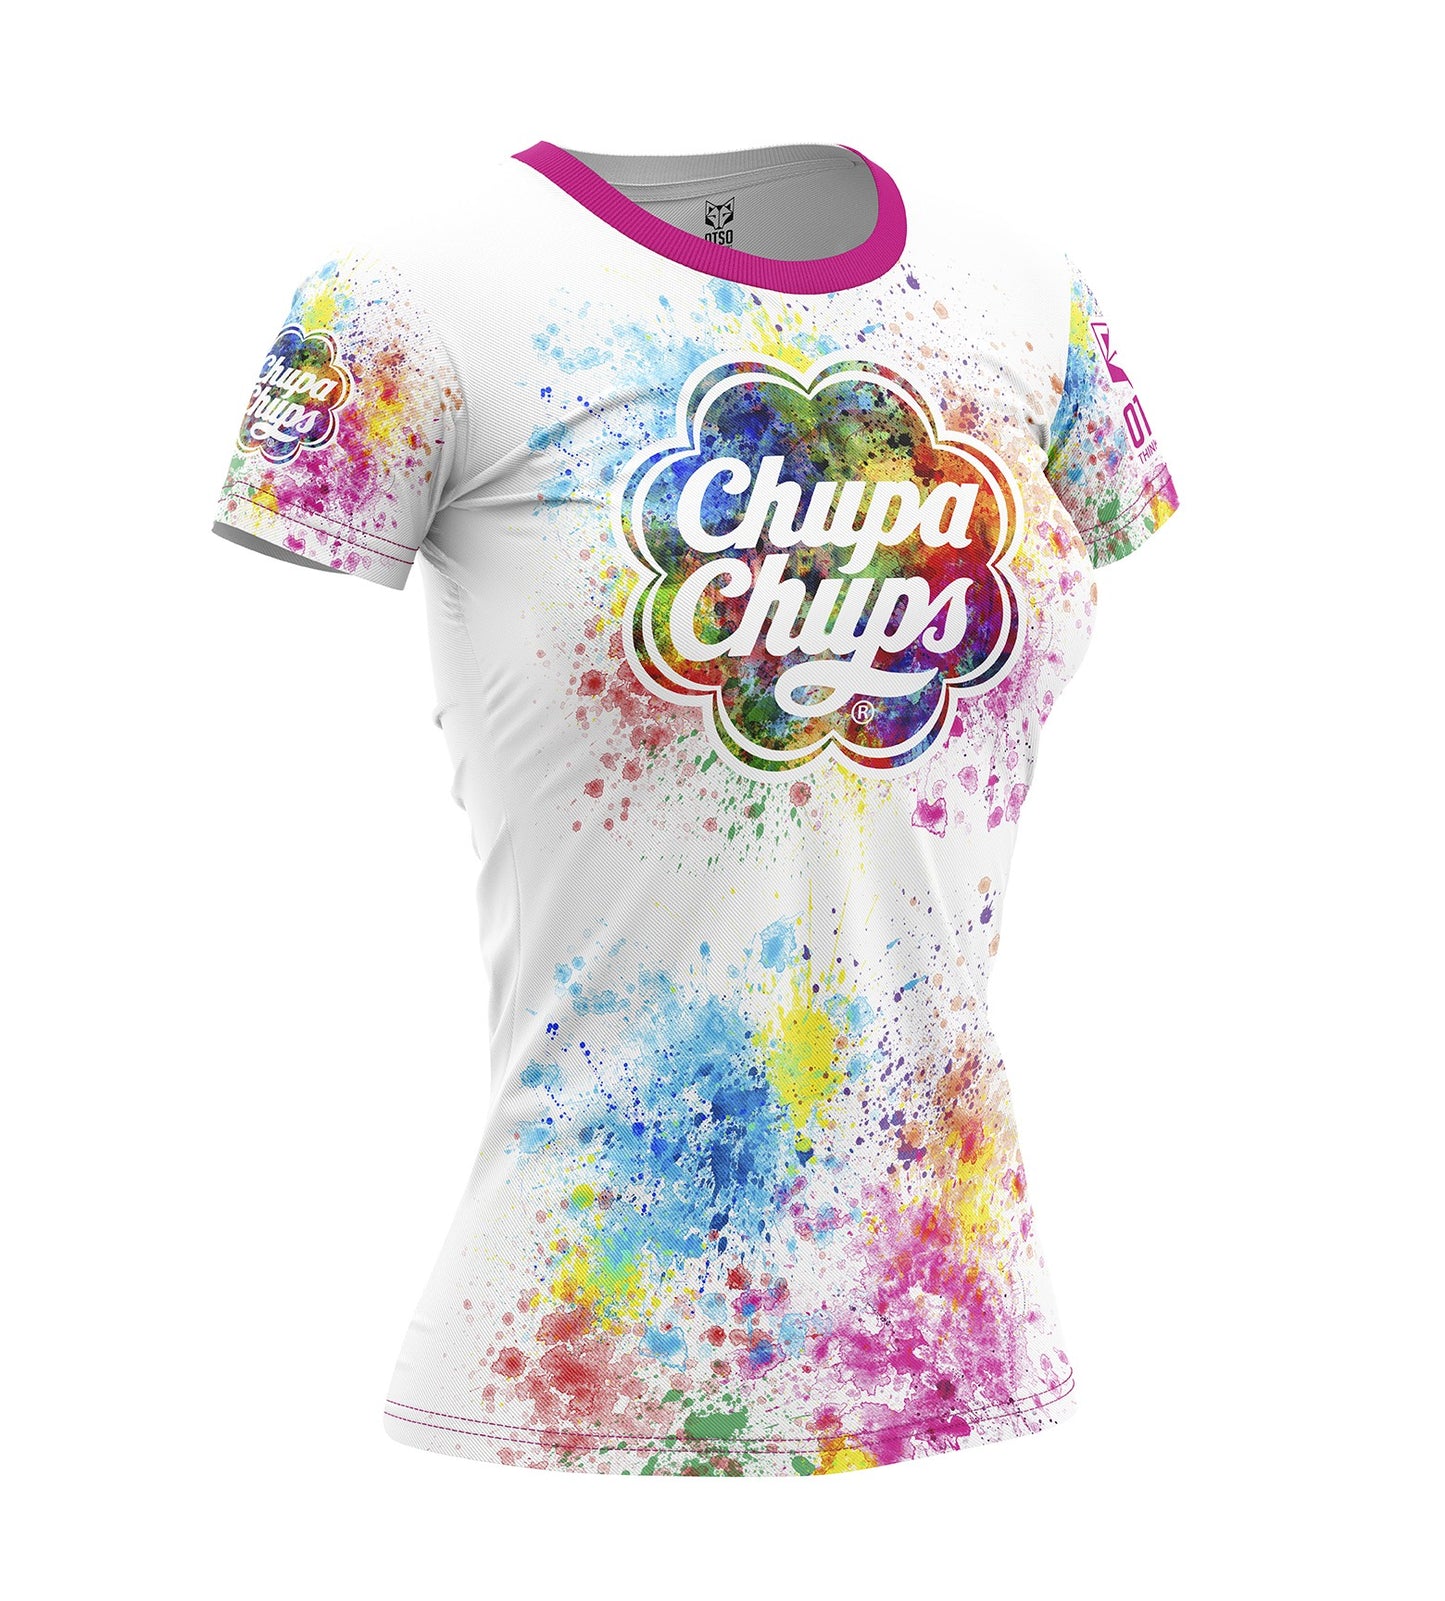 Textile femme t-shirt chupachups paint - OTSO